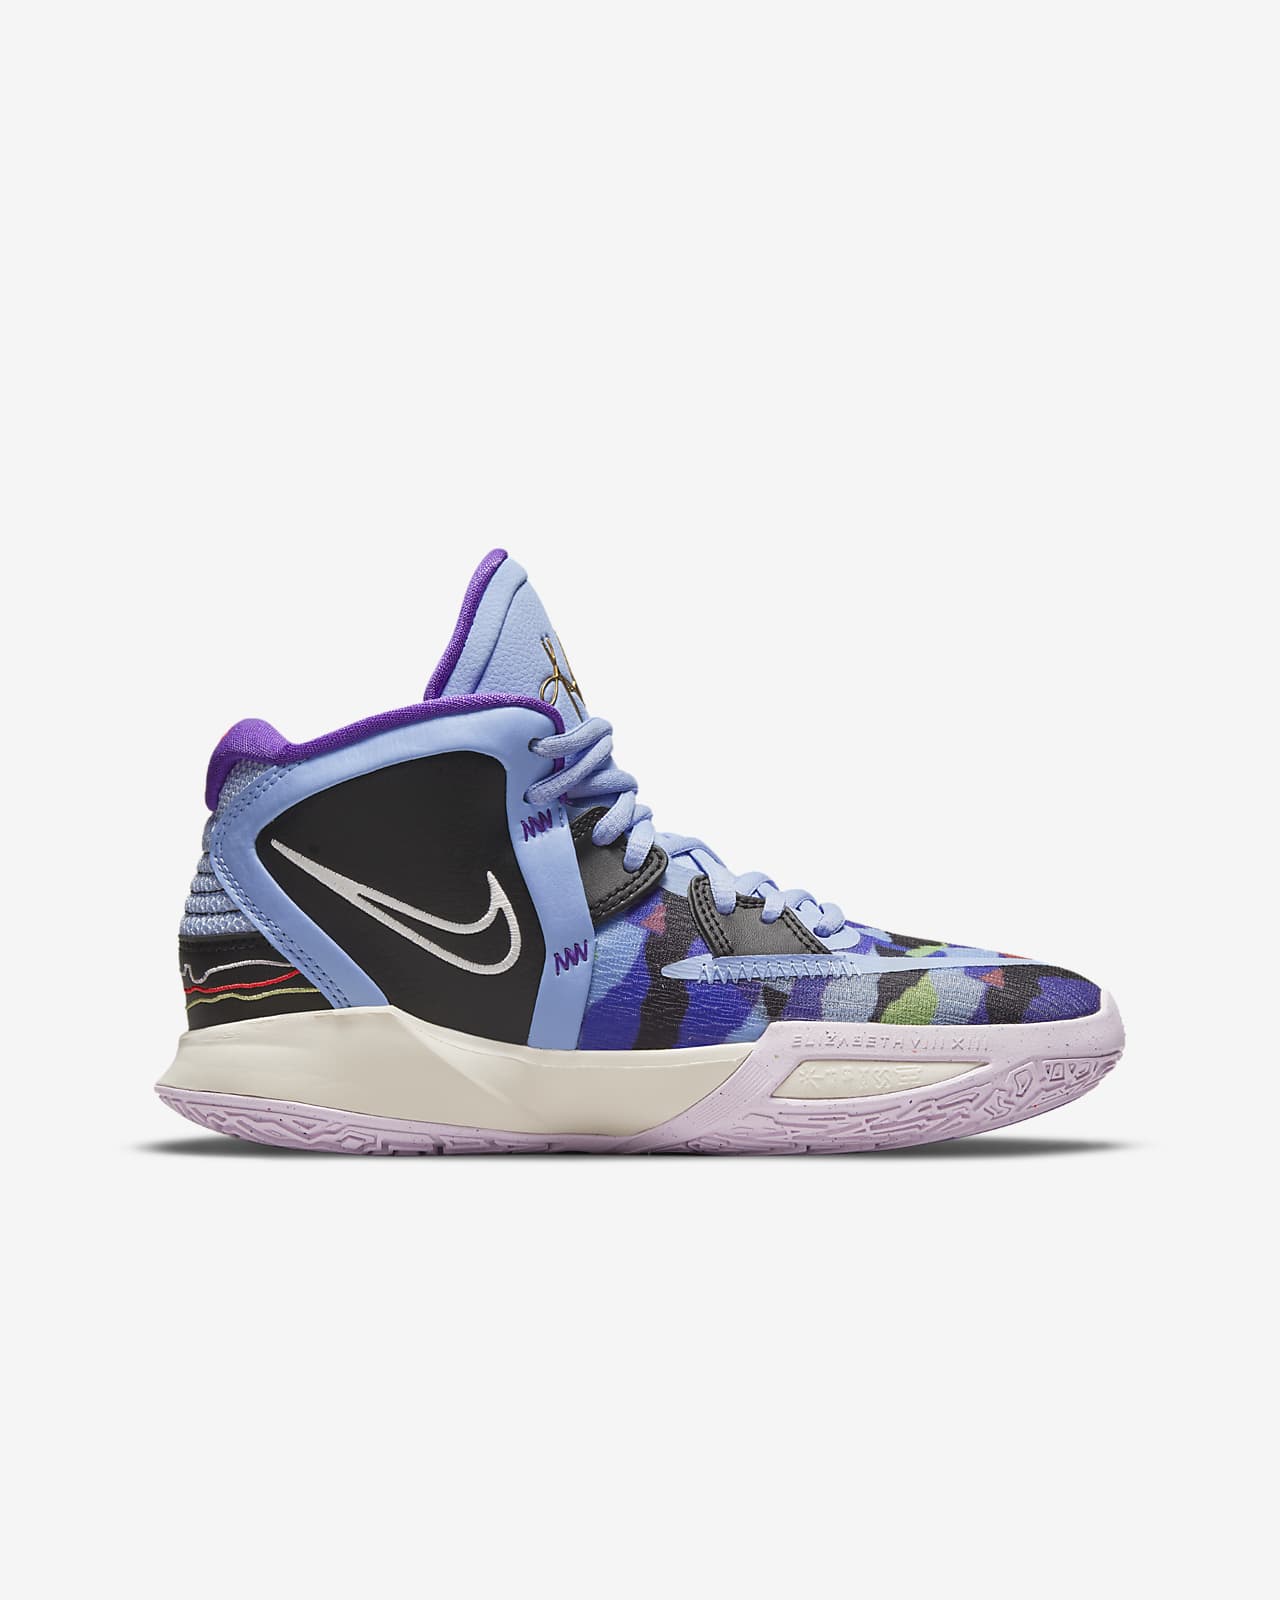 Kyrie Infinity Big Kids' Basketball Shoes. Nike.com